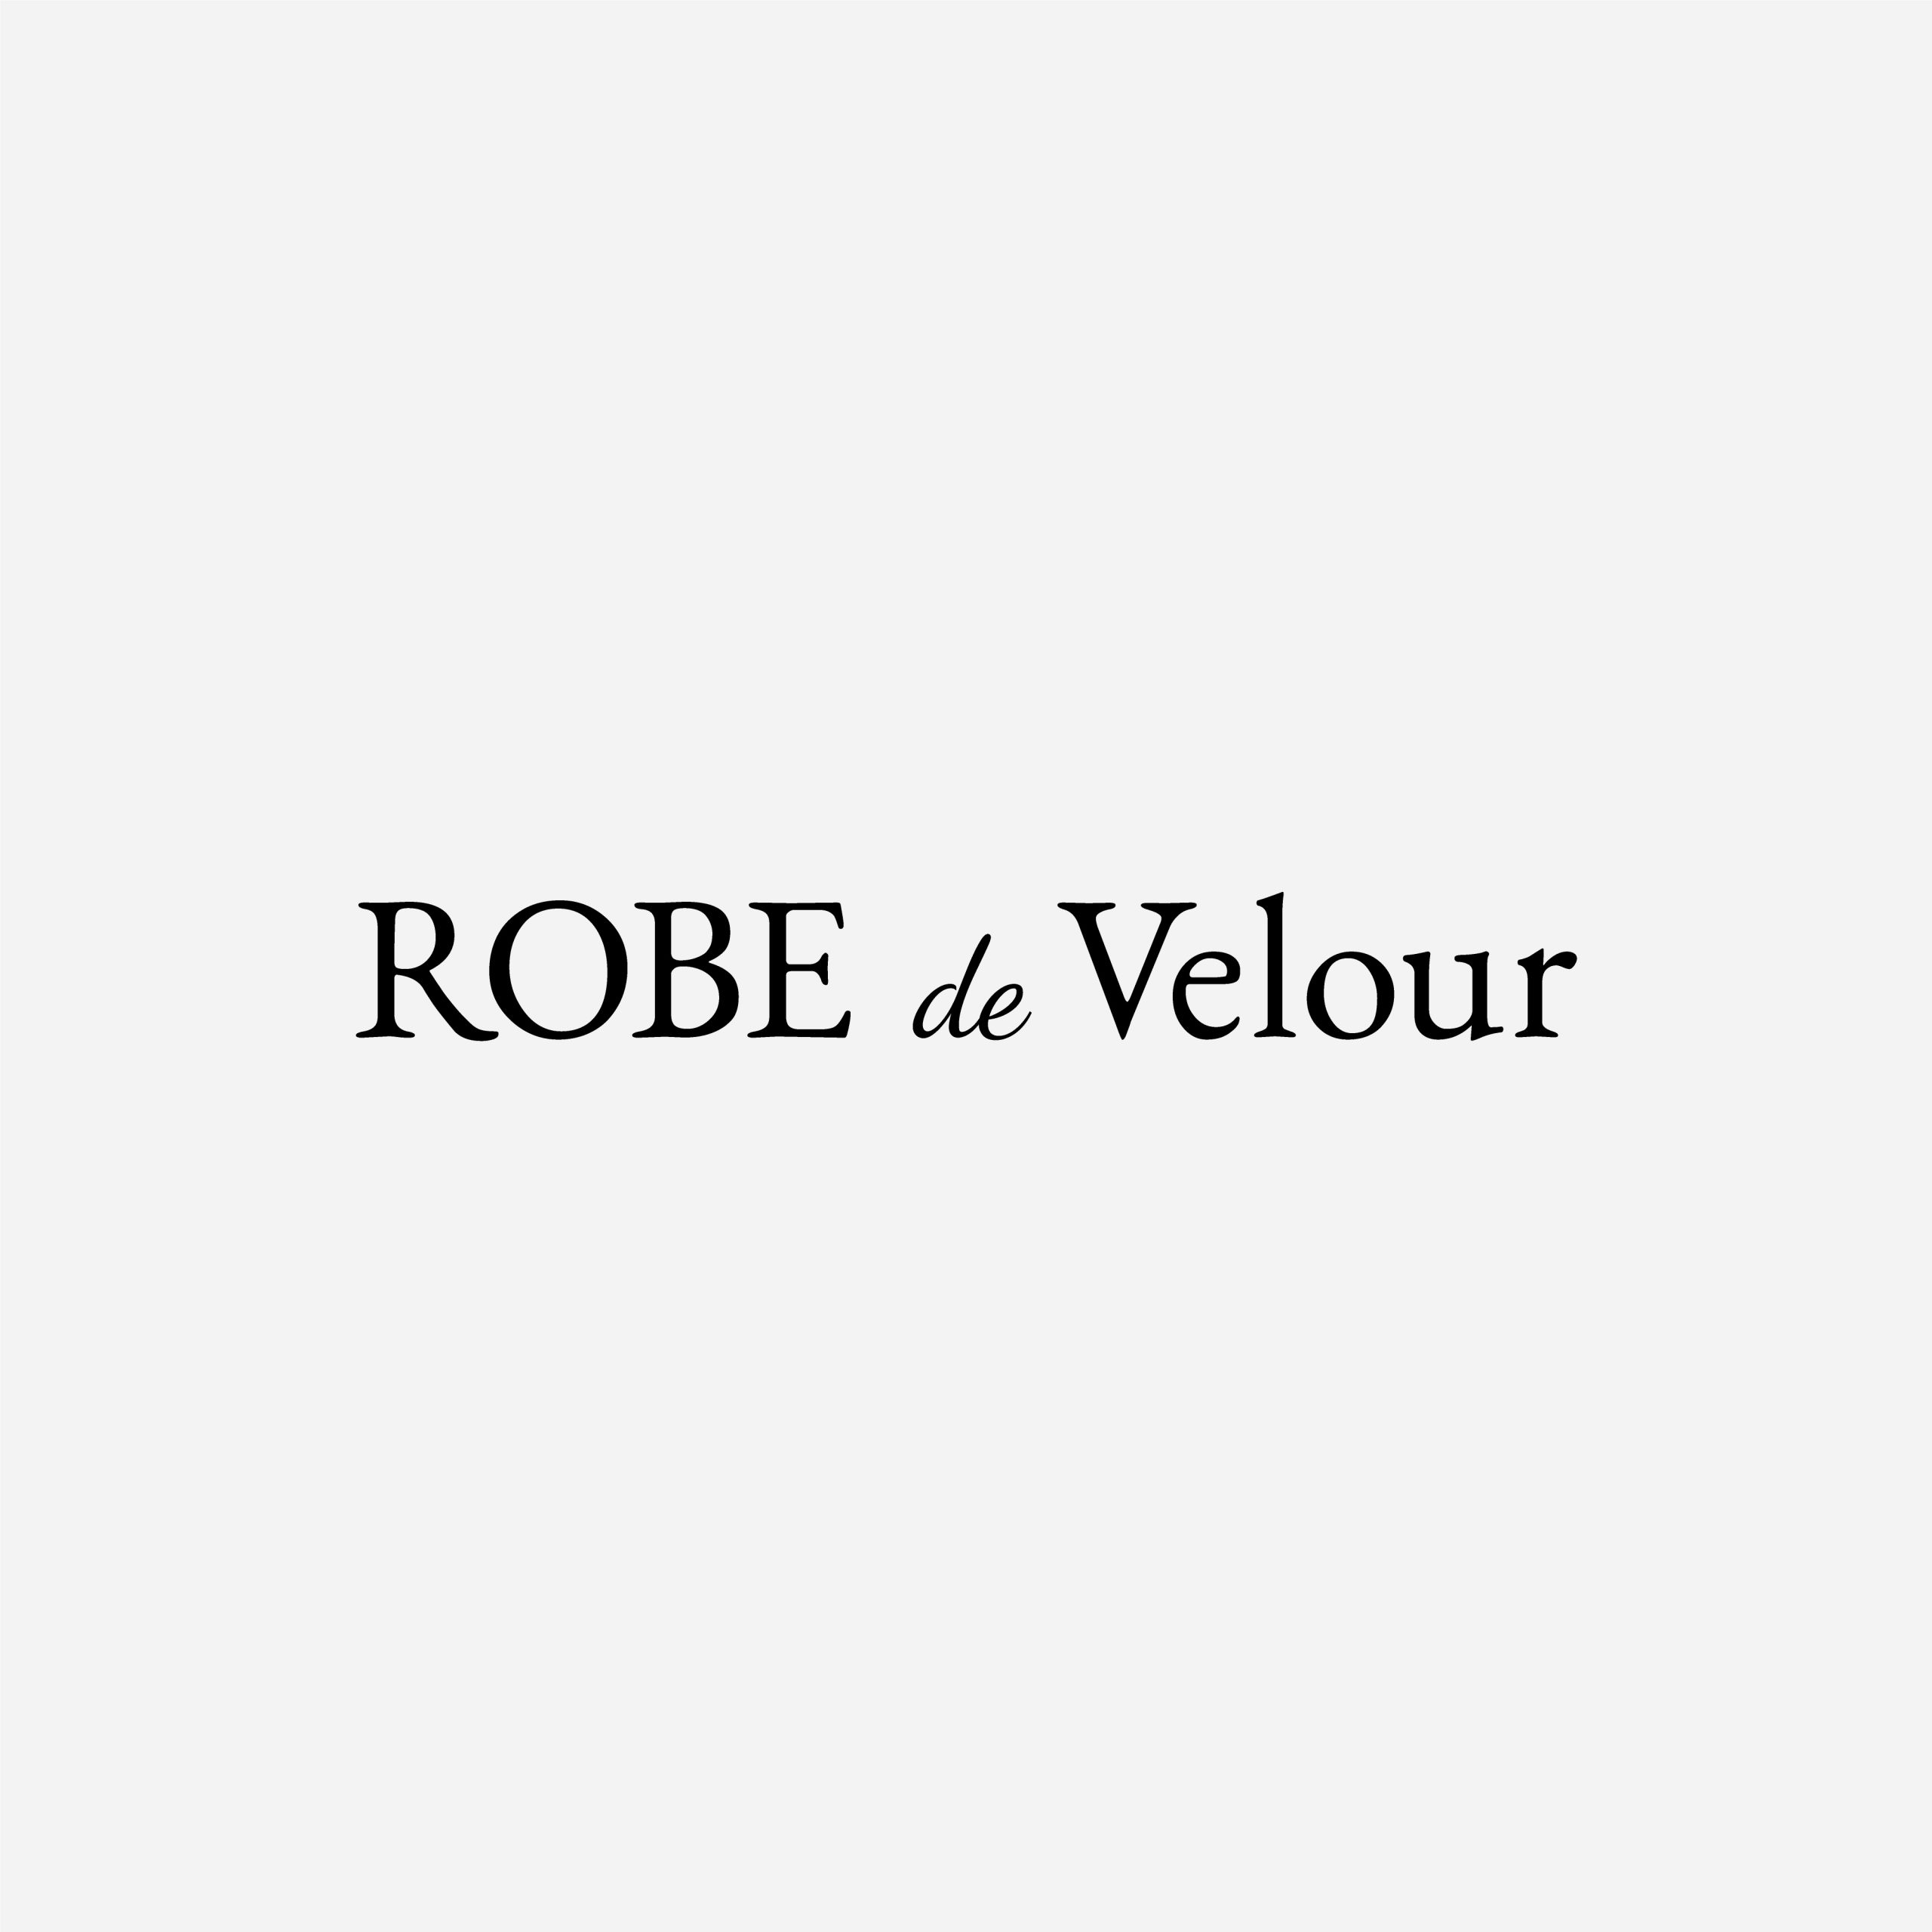 画像未登録時の代替え画像のROBE de Velourのロゴバナー